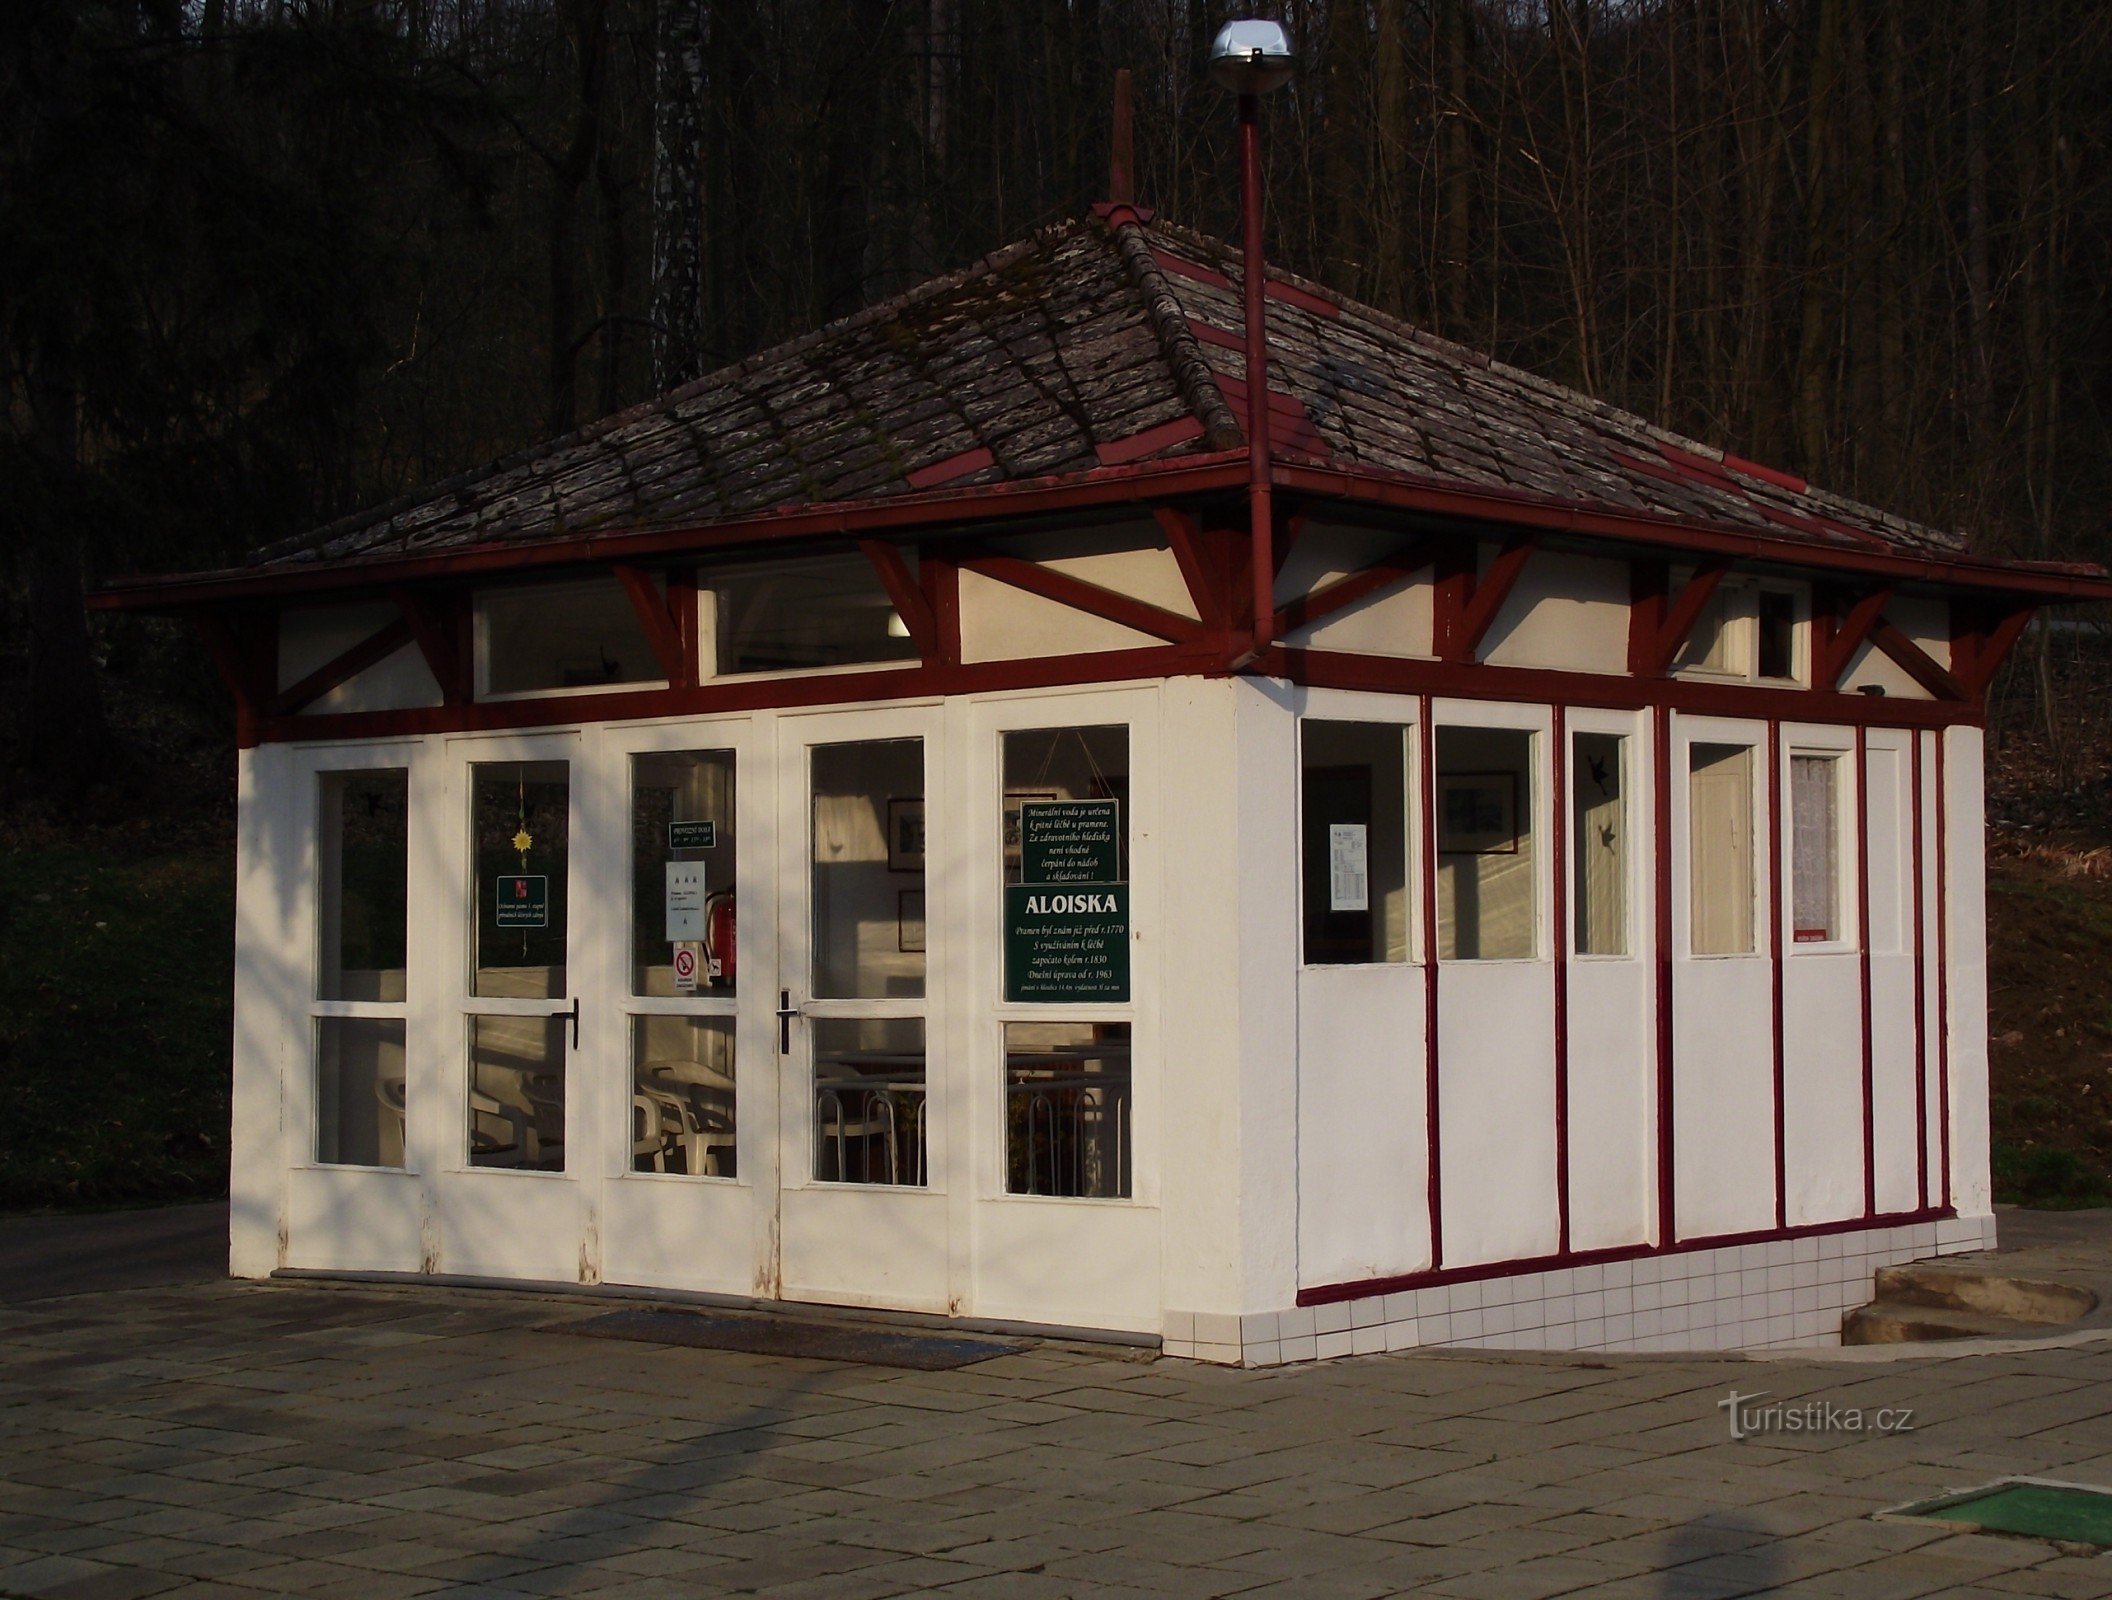 Luhačovice - Aloiska Spring and Pavilion（森林之泉）